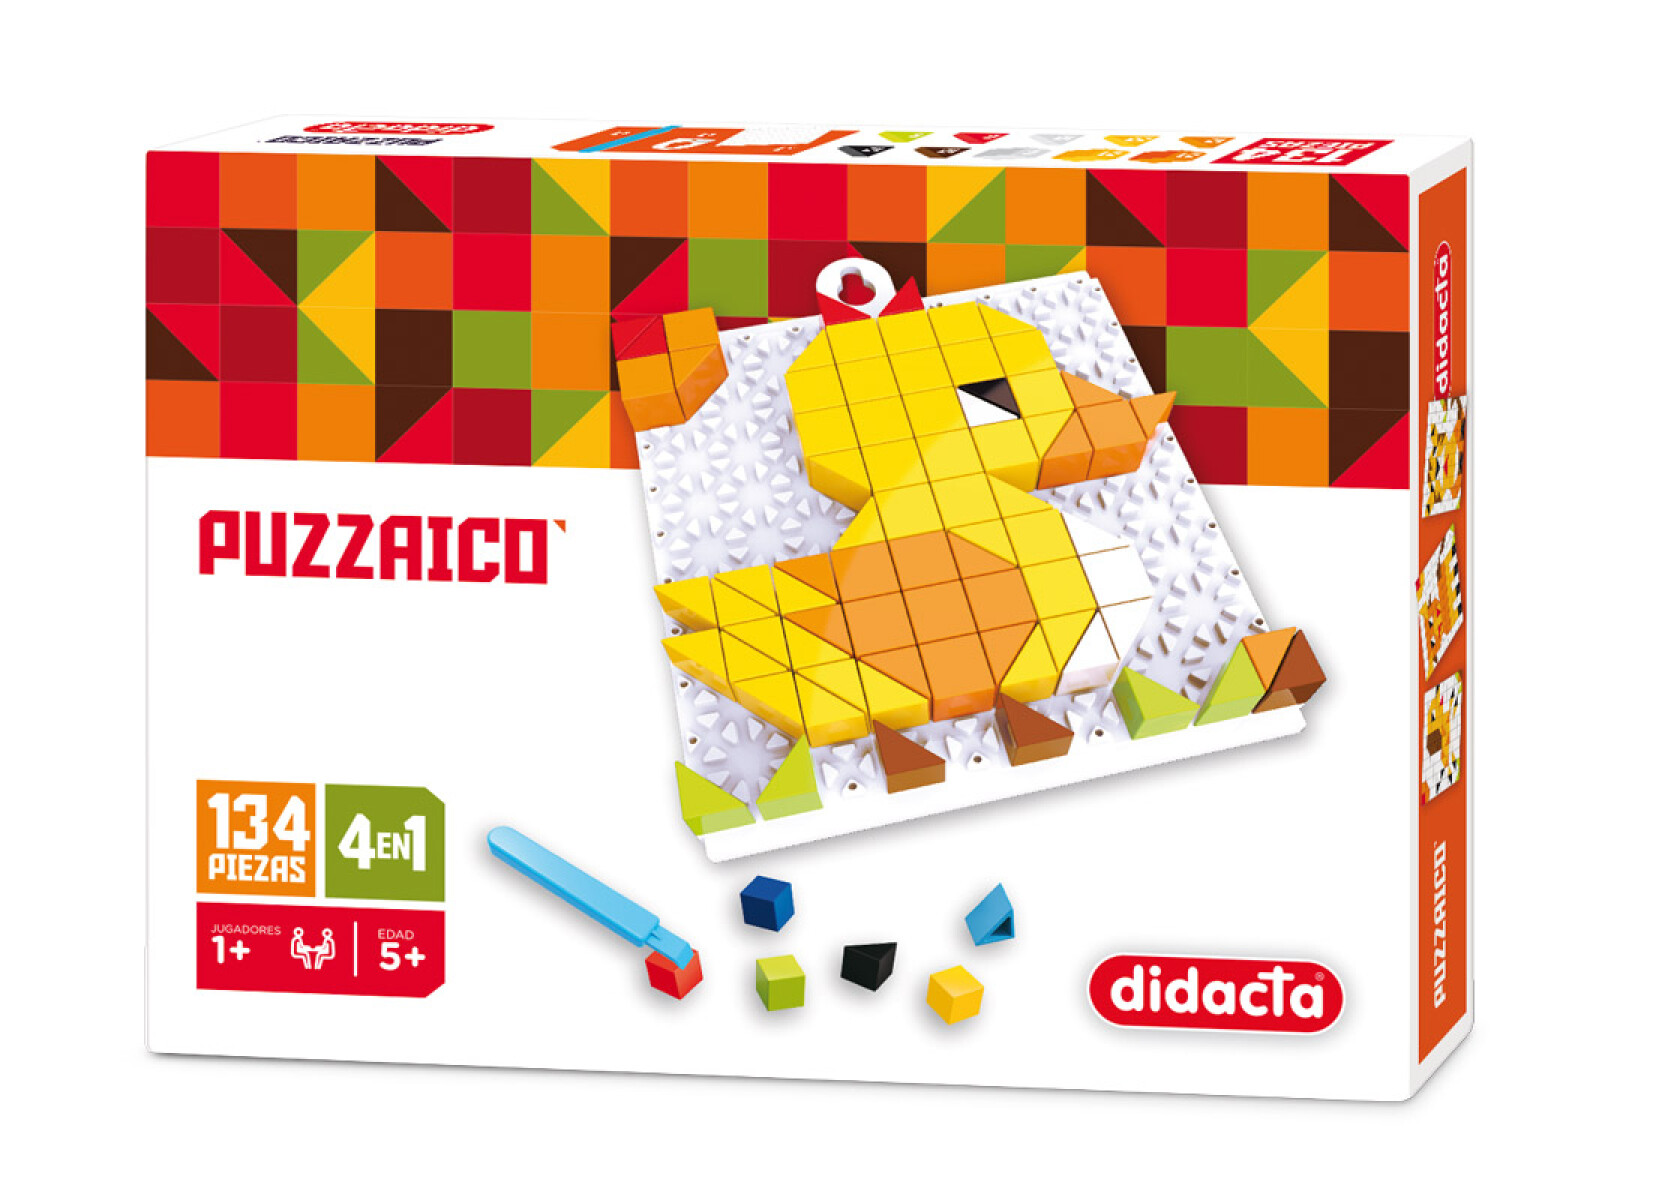 Puzzle Encastrable Didacta Puzzaico Pato - 001 